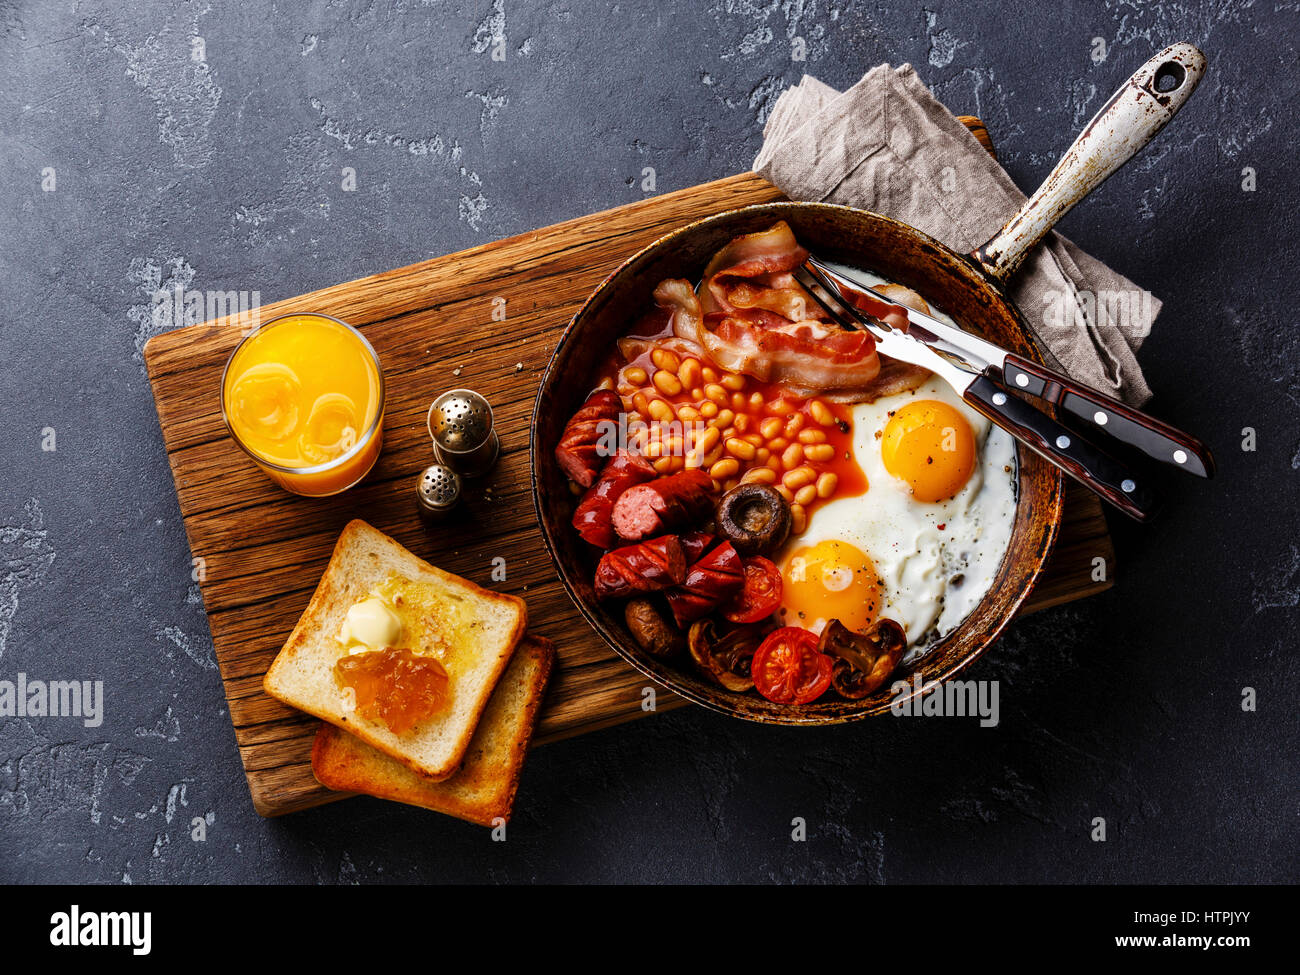 Desayuno inglés en sartén con huevos fritos, salchichas, tocino, frijoles, tostadas y zumo de naranja sobre fondo de piedra oscura Foto de stock